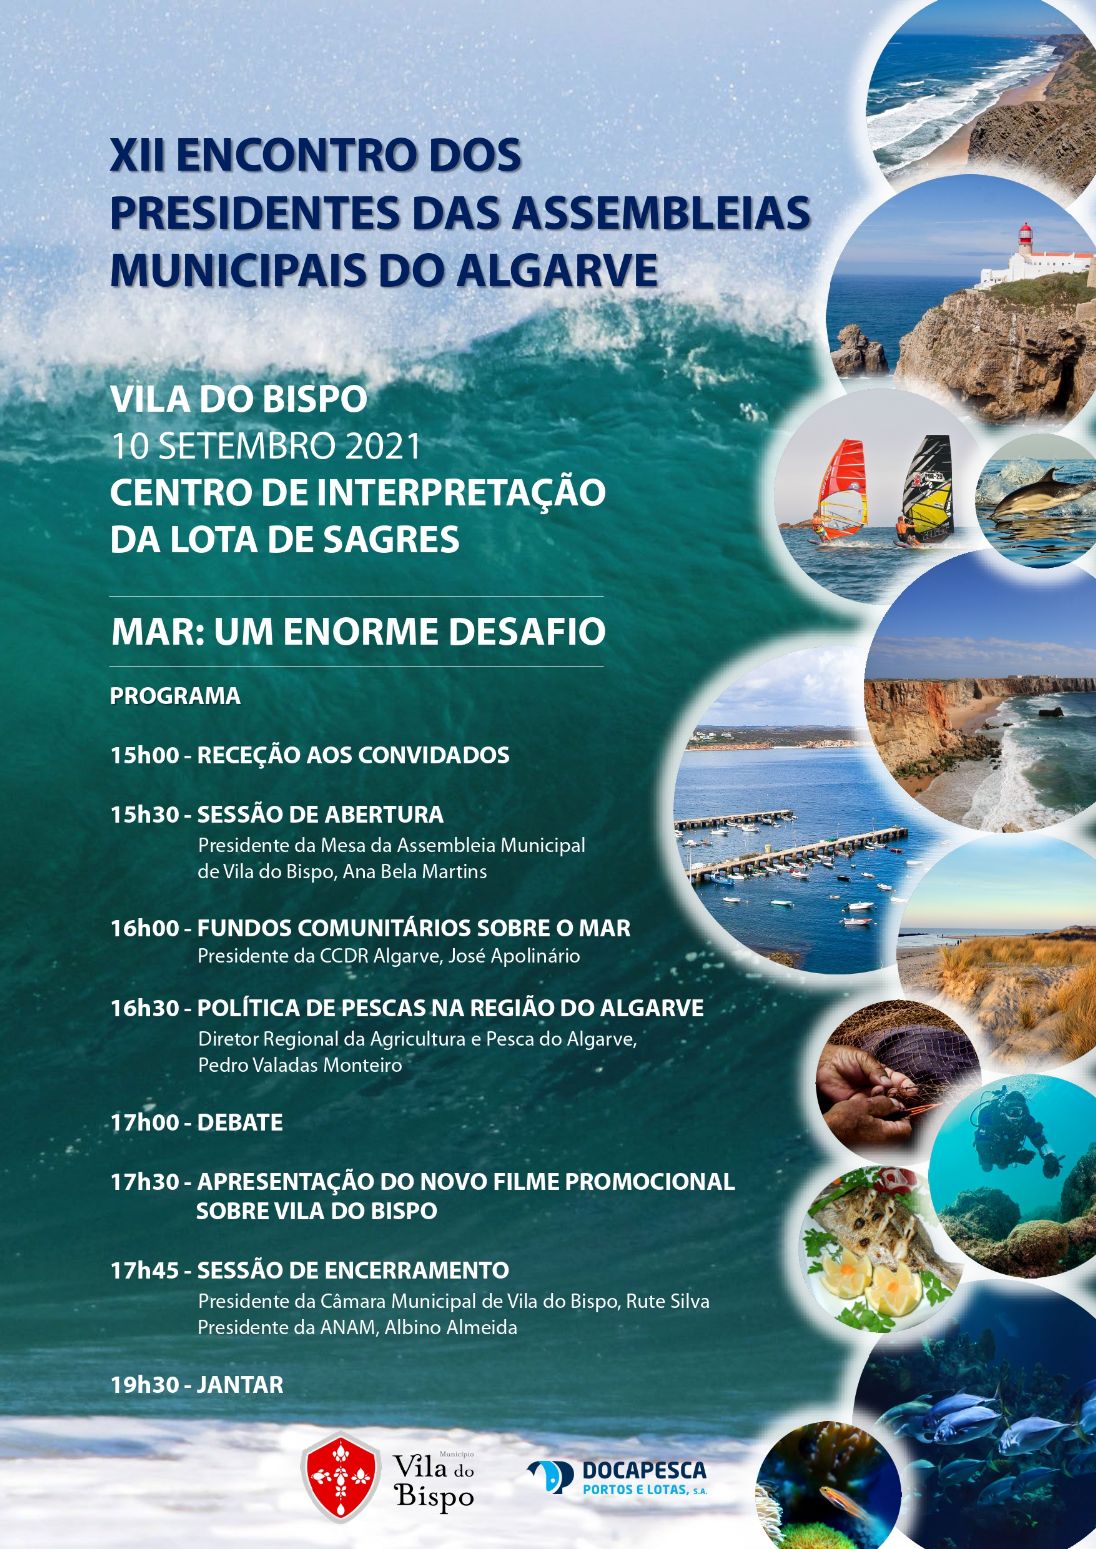 XII Encontro dos Presidentes das Assembleias Municipais do Algarve com lugar dia 10 de Setembro em Sagres